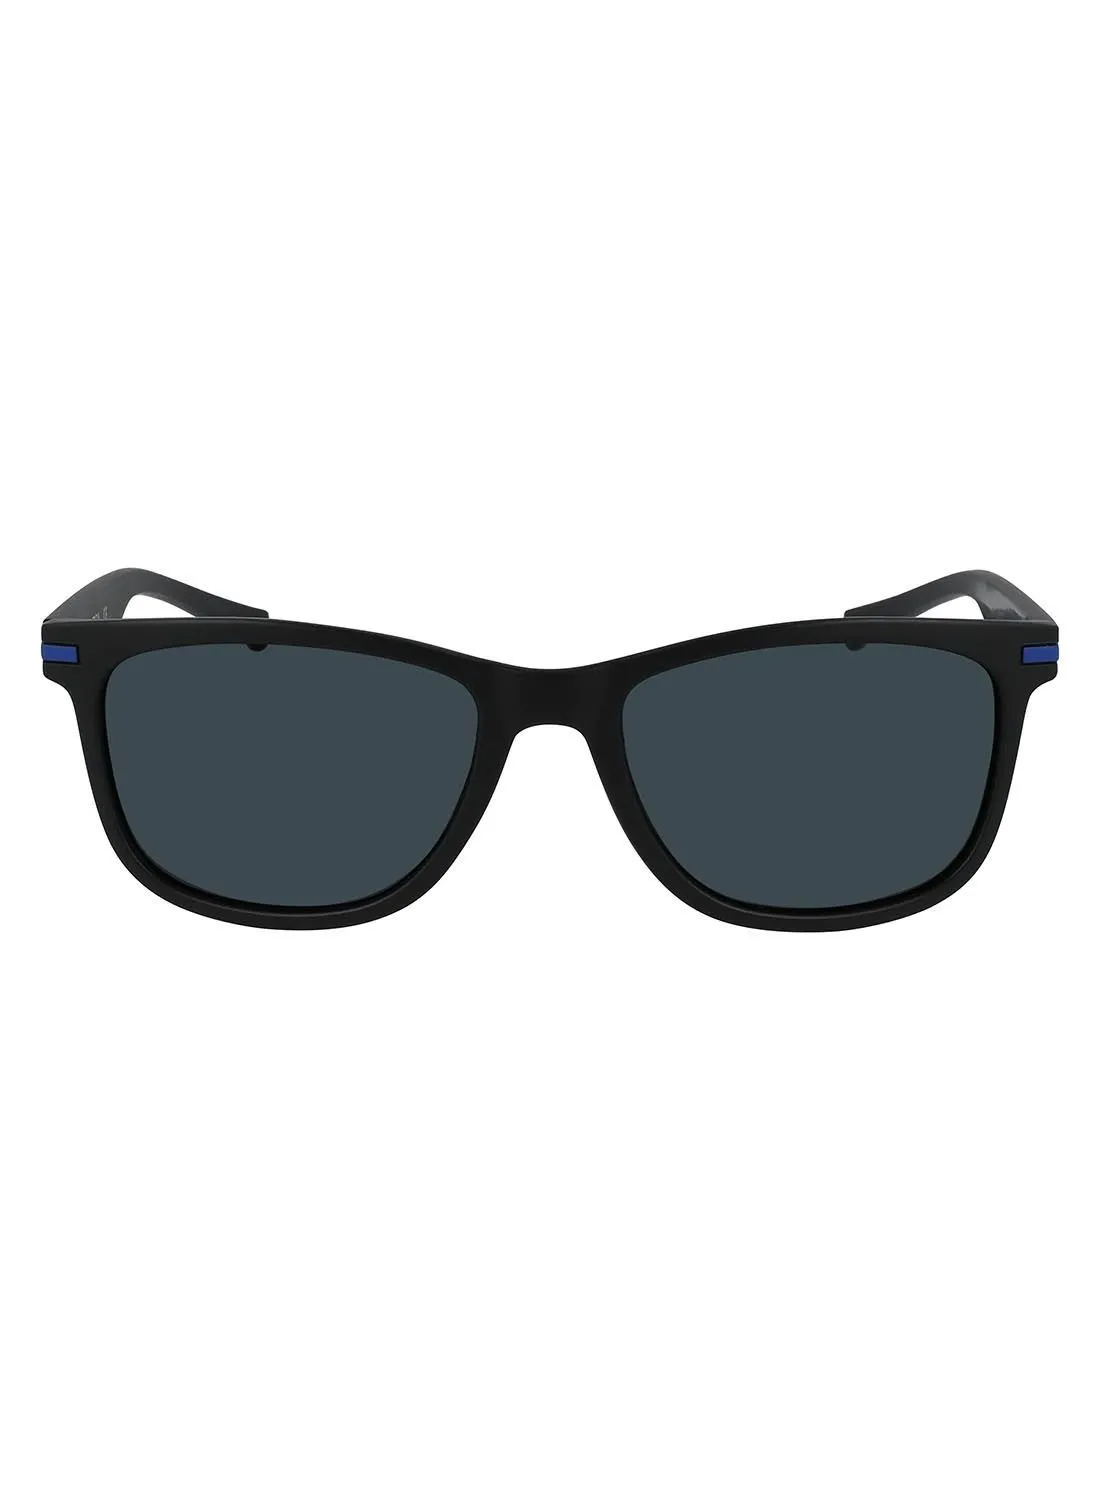 ناوتيكا نظارة شمسية للحماية من الأشعة فوق البنفسجية N3661SP-005-5618